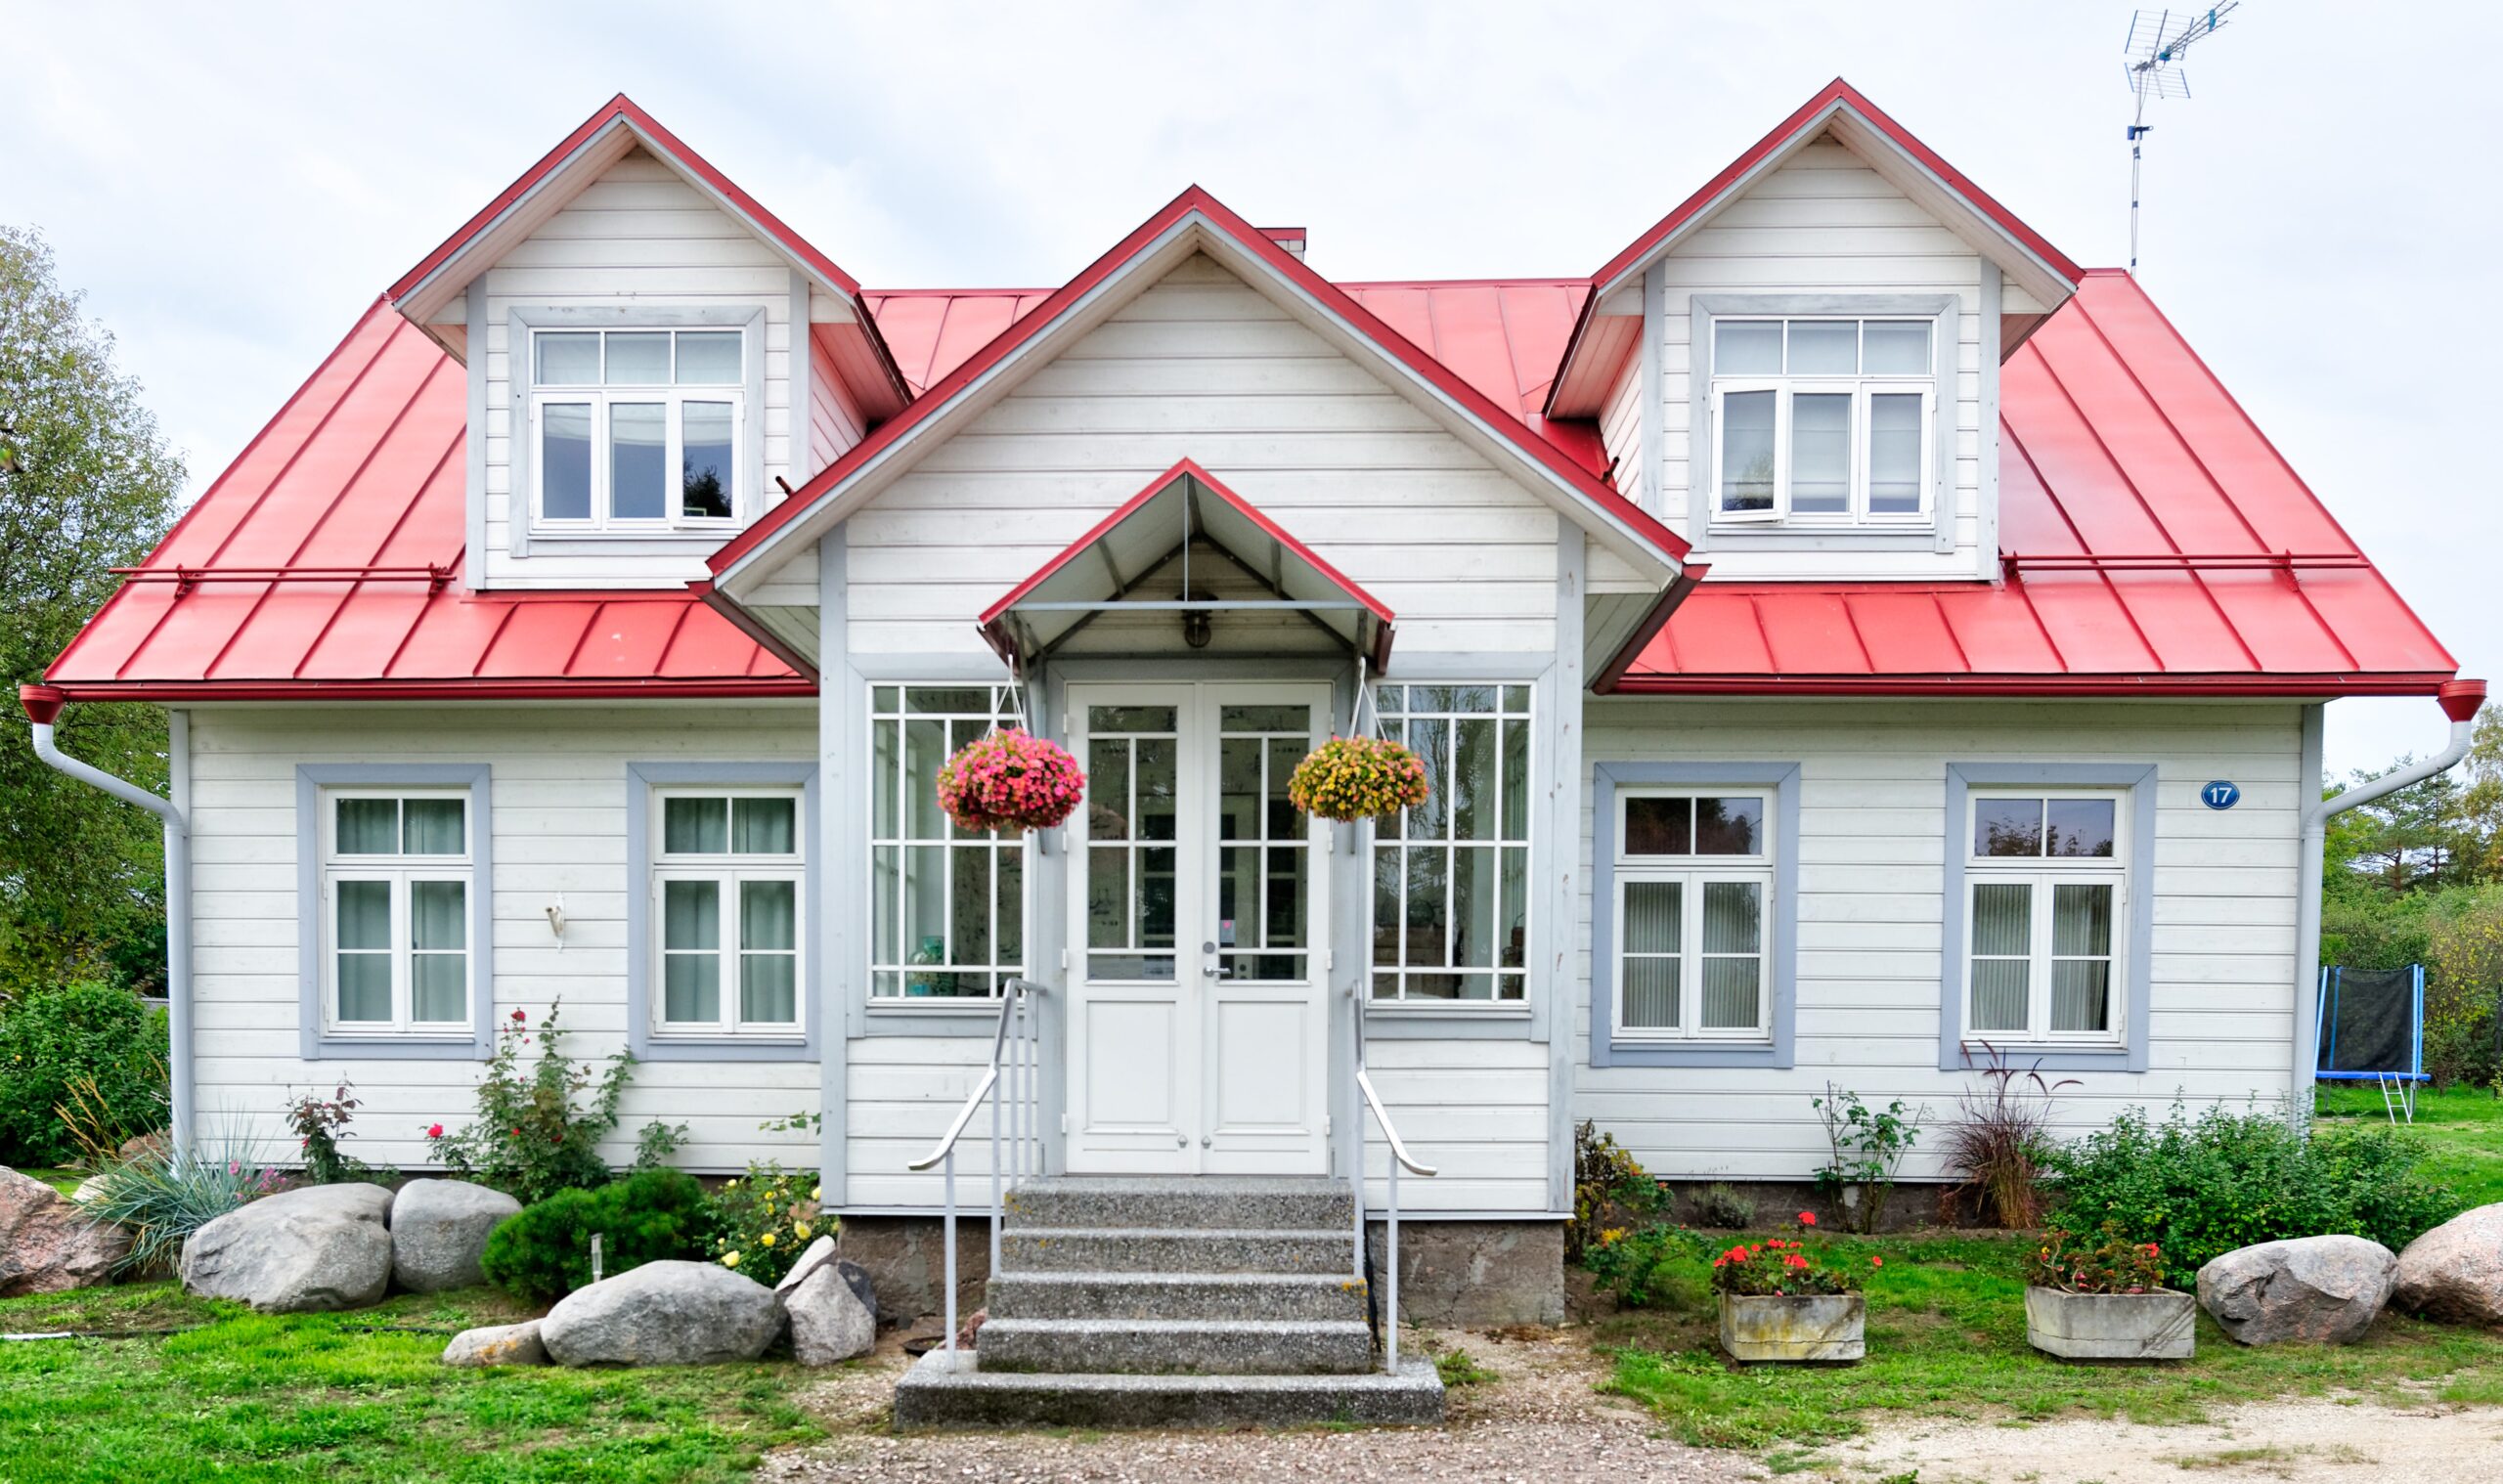 A house in Estonia